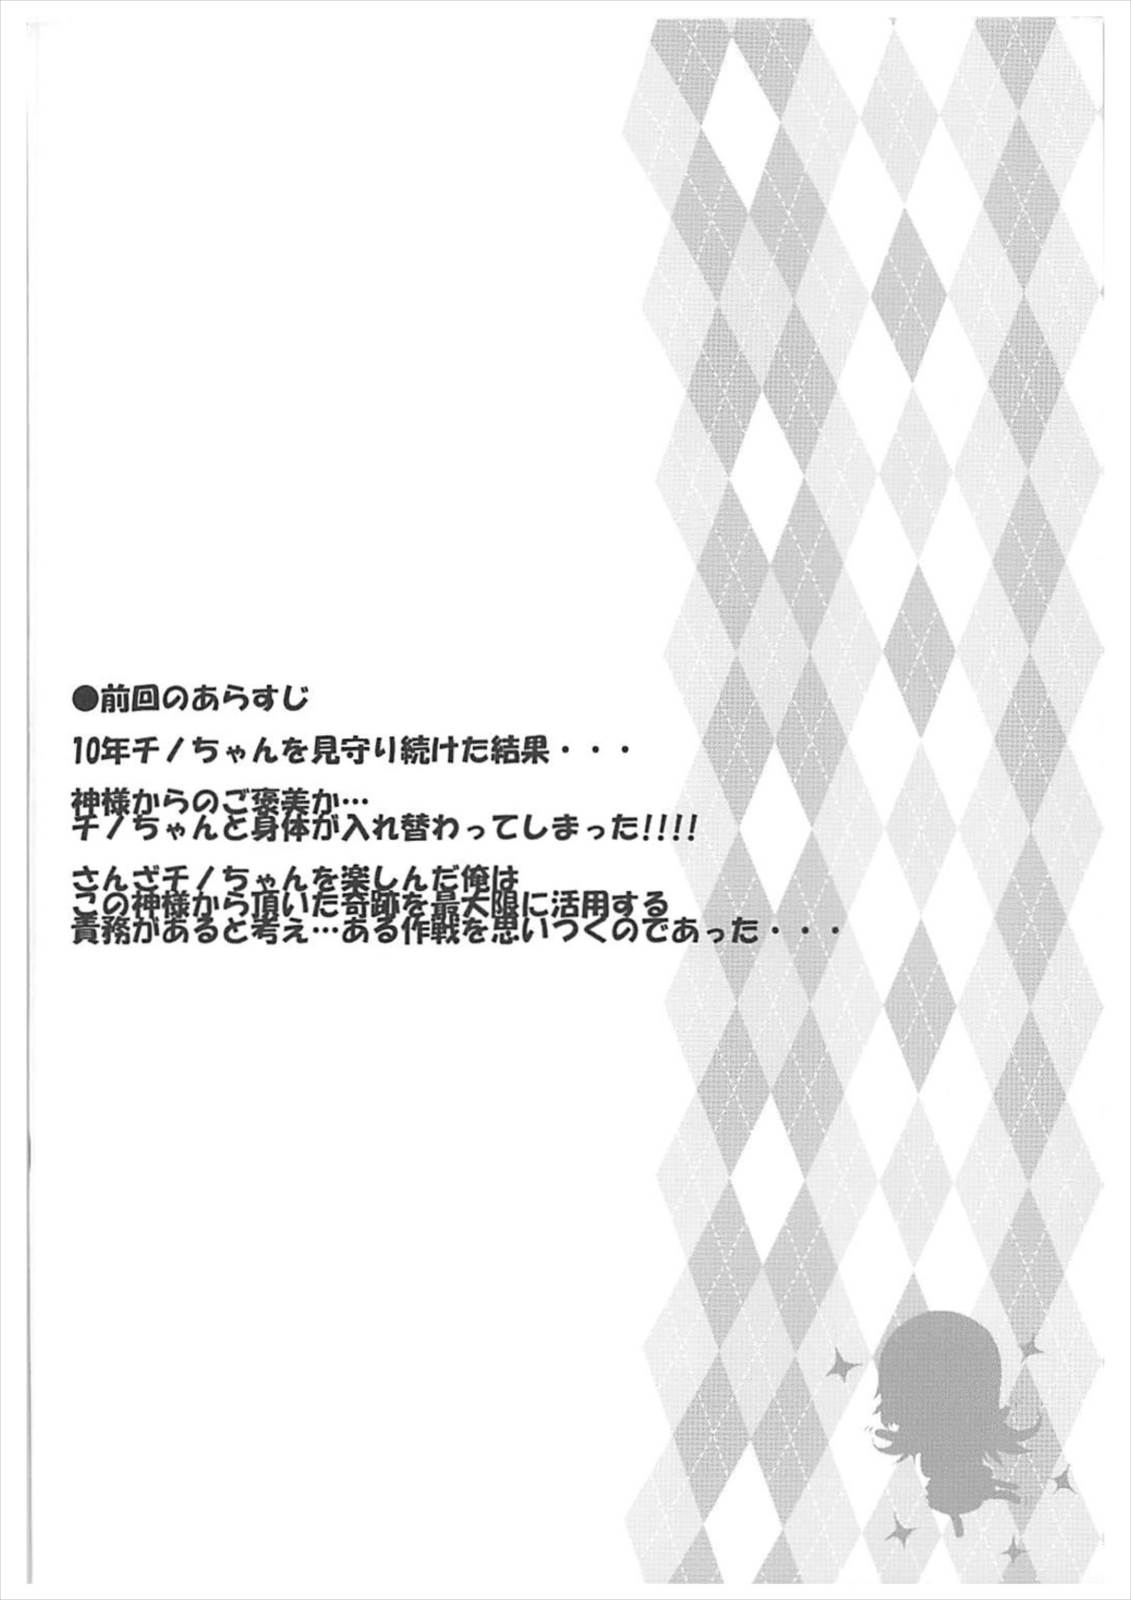 [Argyle check, Wanton Land Kumiai (Komamemaru)] Toro Musume 14 Chino-chan Hajimemashita 2 kai (Gochuumon wa Usagi desu ka?) [2018-02-01] page 3 full